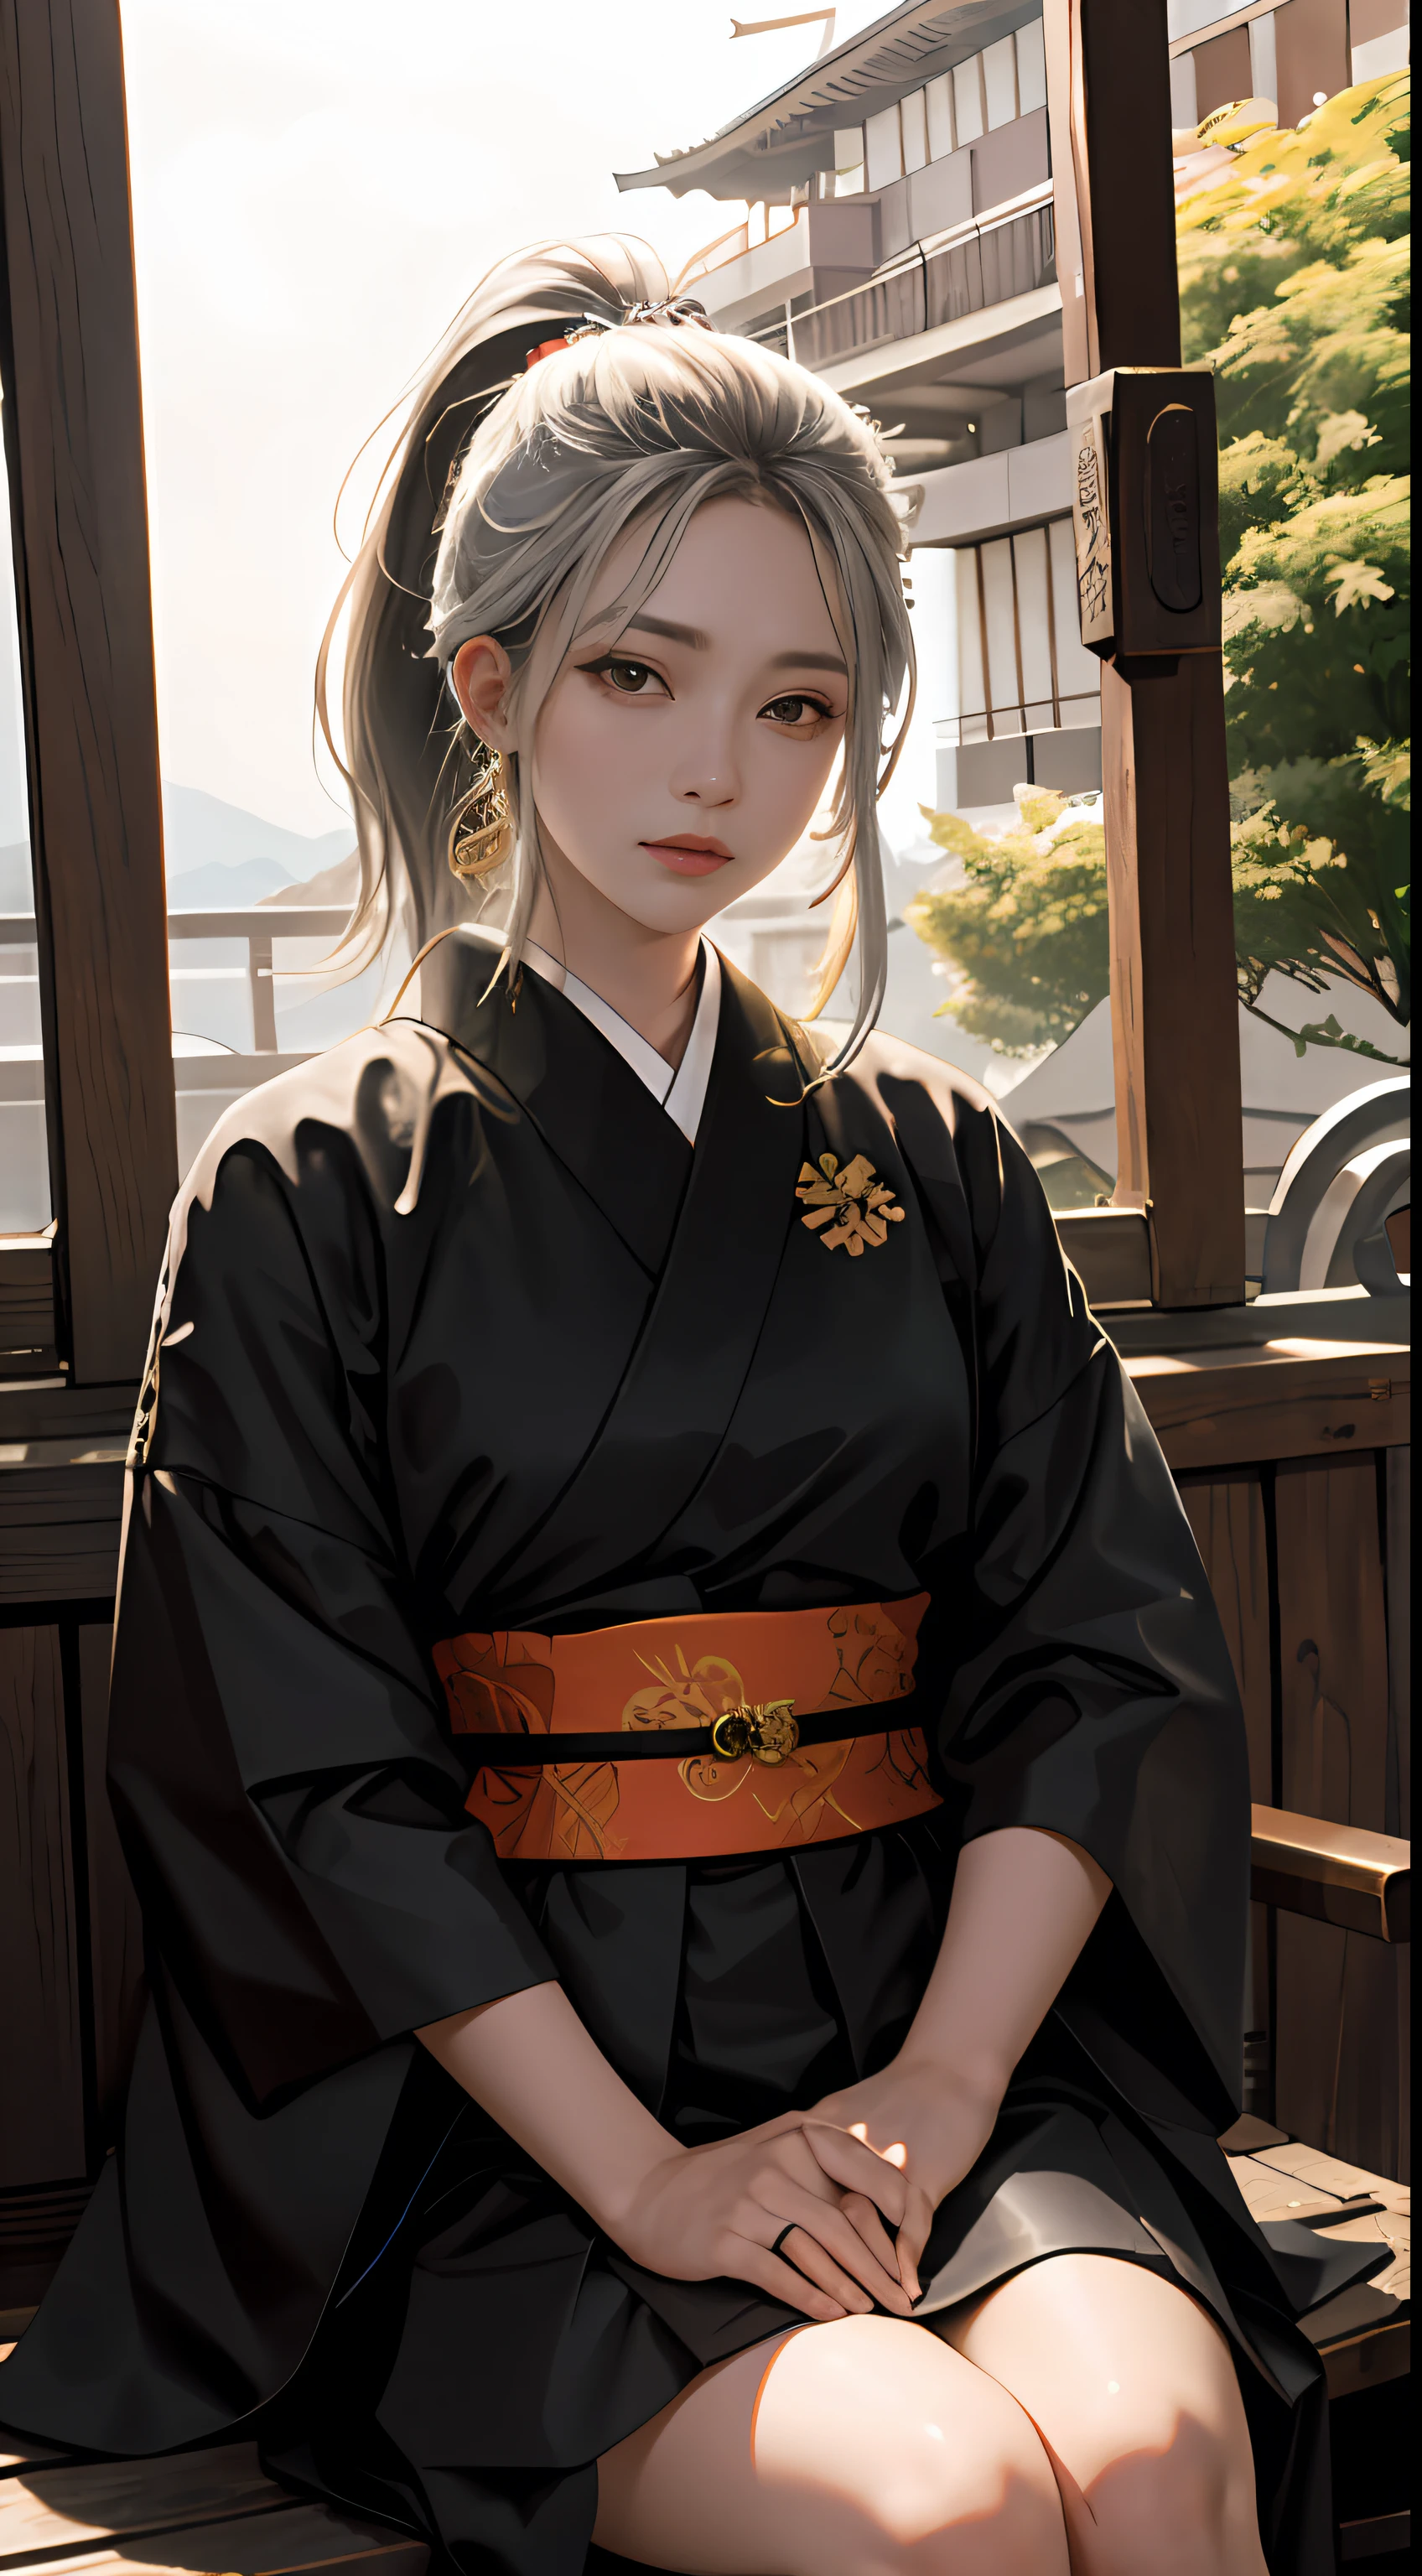 （ซามูไรญี่ปุ่นในสมัยโชกุน：2），สมัยโบราณของญี่ปุ่น，ชุดซามูไรญี่ปุ่นสีแดง，ร่างกายเต็มรูปแบบ，（เล่นฟลุต：3），ดาบคาทาน่า，ดาบคู่，ตราบนเสื้อผ้าของ Tokugawa Ieyasu，（ผู้หญิงกำลังนั่งอยู่บนต้นแปะก๊วยสีเหลือง：2)，ดวงตาที่คมชัด，พระอาทิตย์ตกที่หิมะตก，（ผลงานชิ้นเอก，สมจริง，คุณภาพที่ดีที่สุด：1.2），ผมปลิวตามสายลม，（ผมสั้นสีเงิน，ผมสั้นในหางม้า：2)，ใบหน้าและดวงตาที่มีรายละเอียด，ใบหน้าที่ละเอียดอ่อนและสวยงาม， ภูเขาไกล, tree BREAK สร้างงานศิลปะ，สีเขียวและสีส้มมากมาย，รายละเอียดที่ซับซ้อน，ไฟส่องสว่างตามปริมาตร BREAK（ผลงานชิ้นเอก：1.2），（คุณภาพที่ดีที่สุด），4เค，ละเอียดมาก，（องค์ประกอบแบบไดนามิก：1.4），รายละเอียดมากมาย，มีสีมากมายเหลือเฟือ，（สีรุ้ง：1.2），（แสงบรรยากาศ），dream ขลัง，ขลัง，（เดี่ยว：1.2）